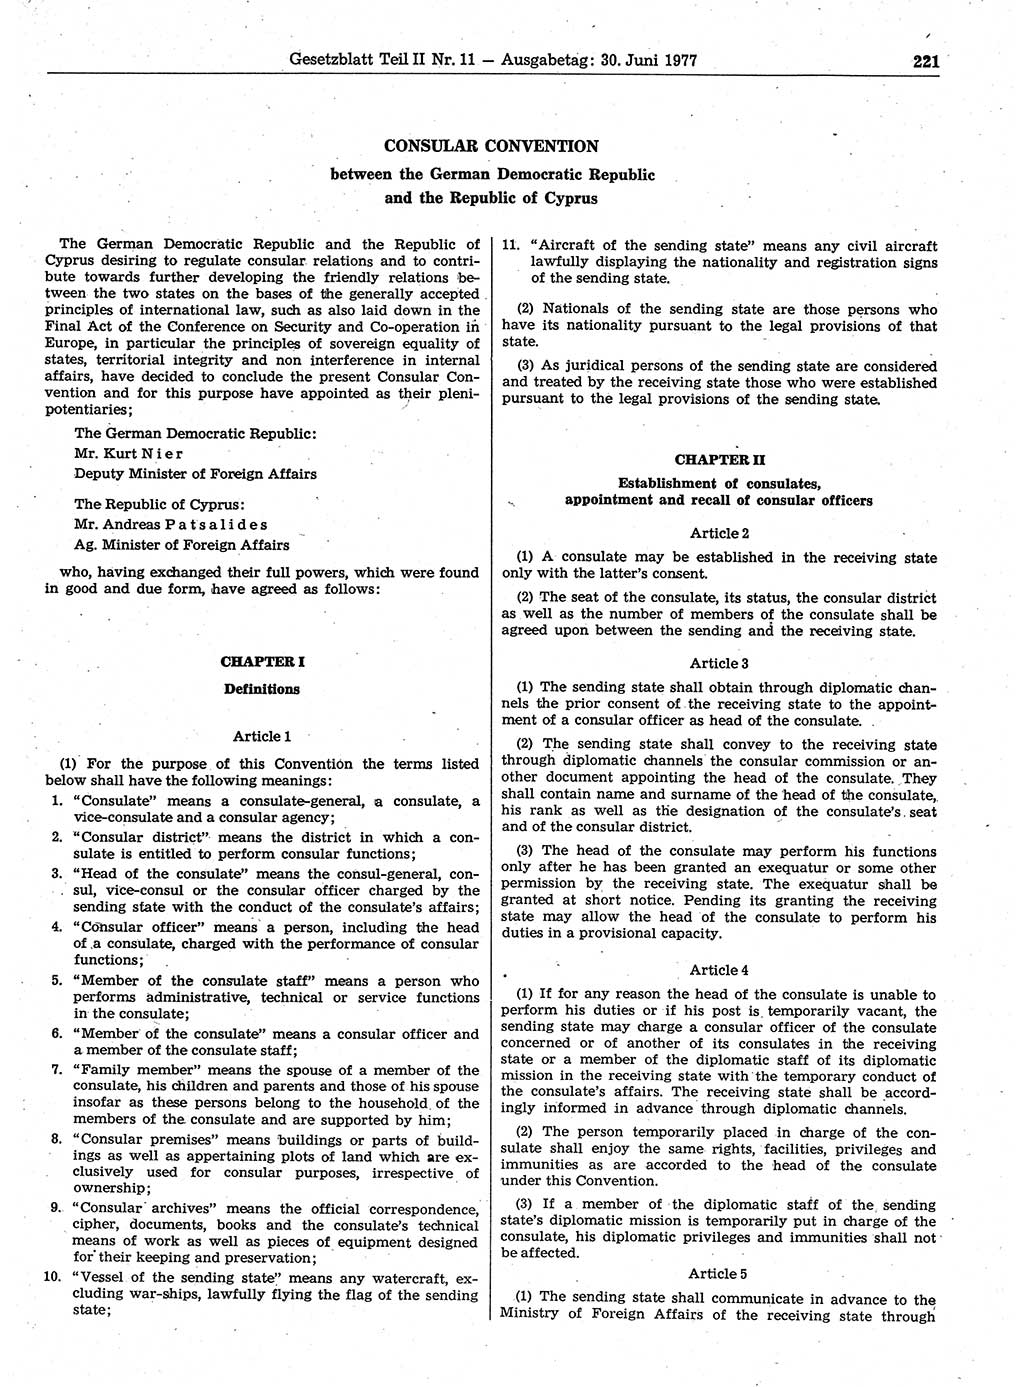 Gesetzblatt (GBl.) der Deutschen Demokratischen Republik (DDR) Teil ⅠⅠ 1977, Seite 221 (GBl. DDR ⅠⅠ 1977, S. 221)